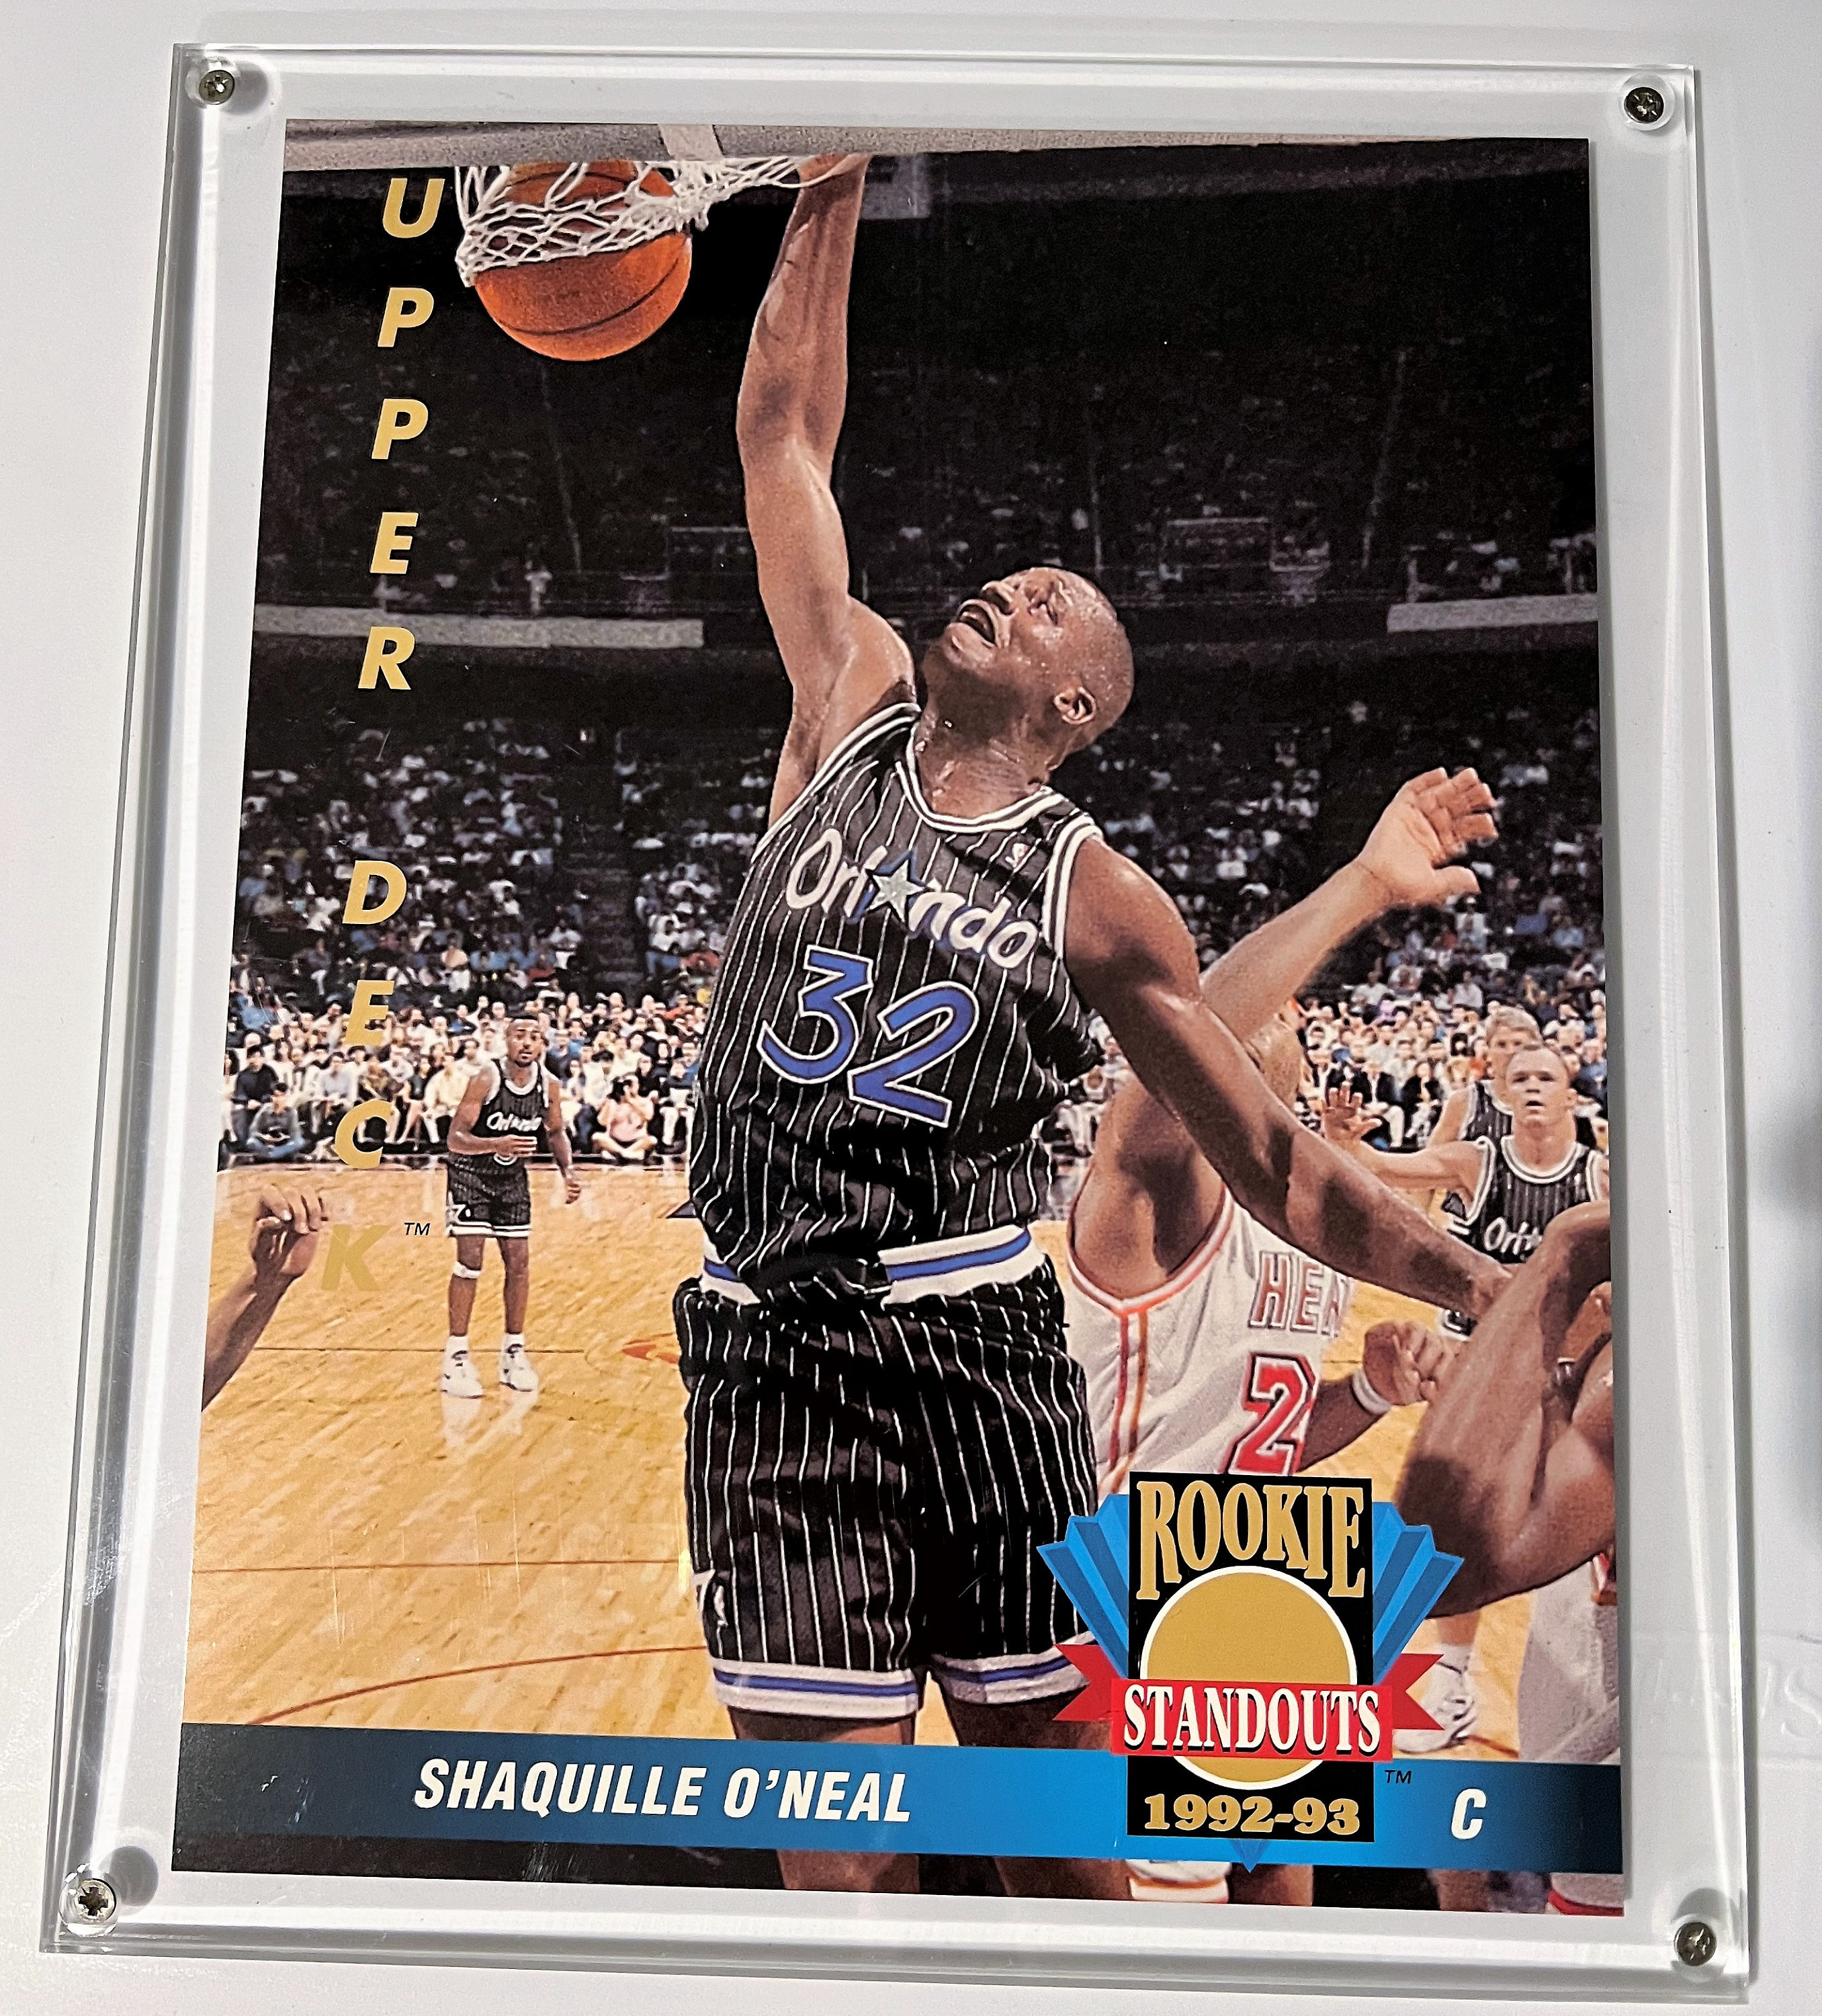 1993-94 Upper Deck Basketball Rookie Exchange Gold # RE 1 Chris Webber  Warriors